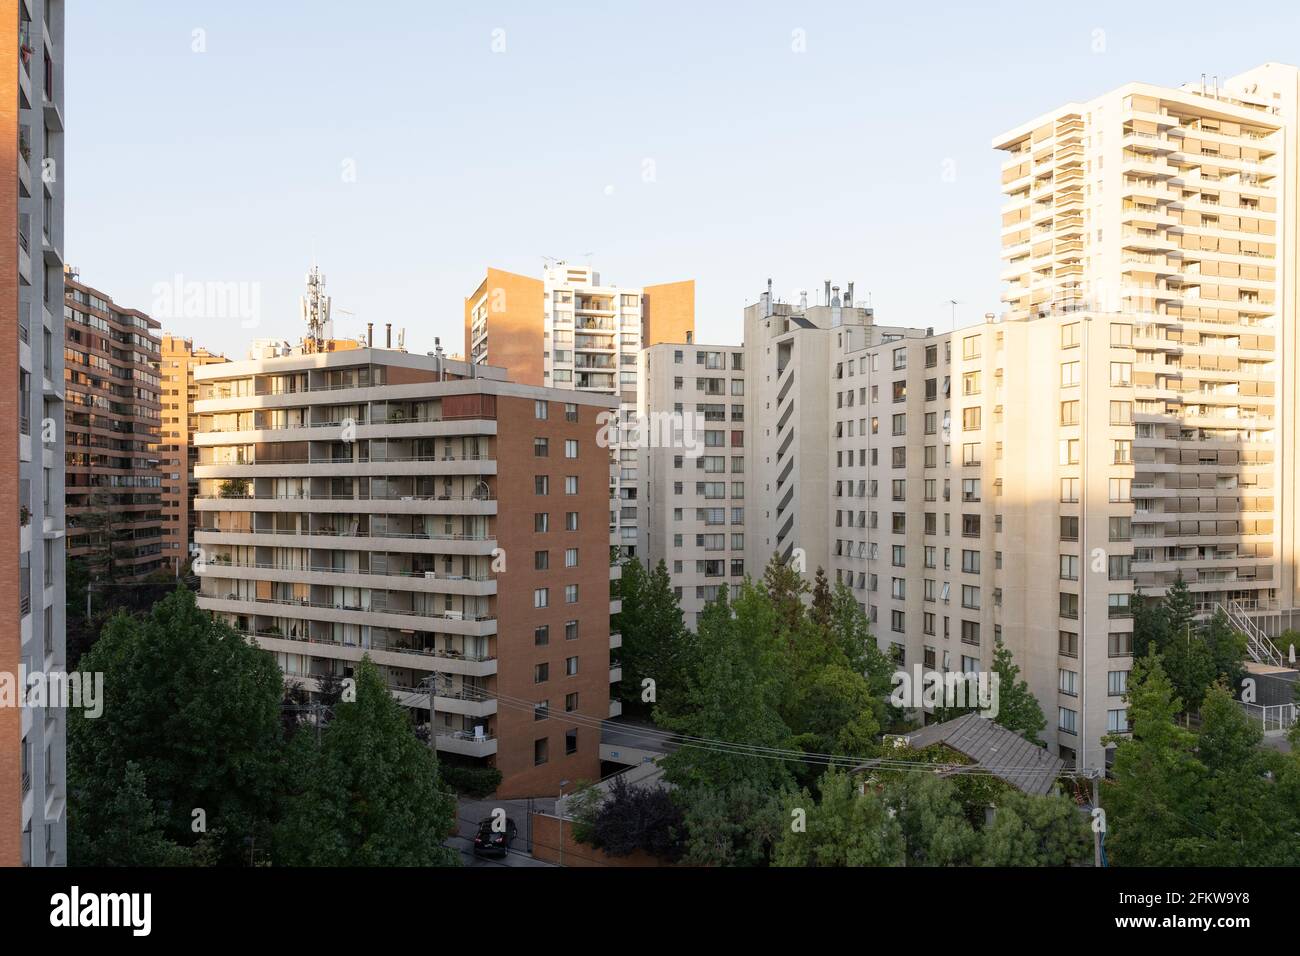 Zone suburbaine avec immeubles d'appartements le jour ensoleillé à Santiago, Chili. De grands gratte-ciel dans un quartier résidentiel. Concept de ville surpeuplée Banque D'Images